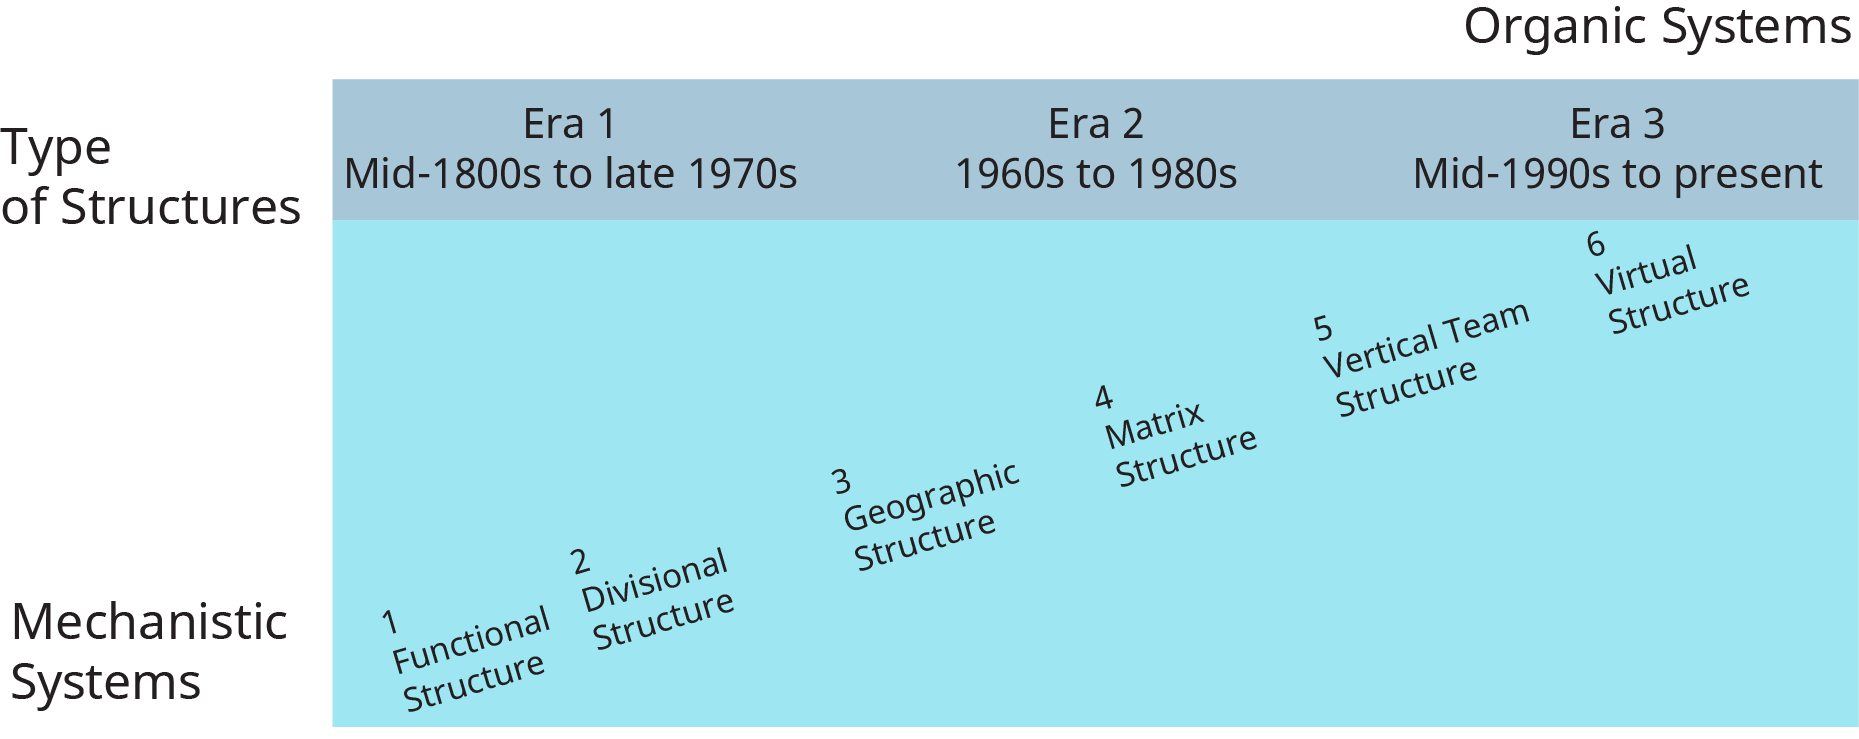 Um diagrama ilustra as diferentes estruturas organizacionais que evoluíram ao longo do tempo.